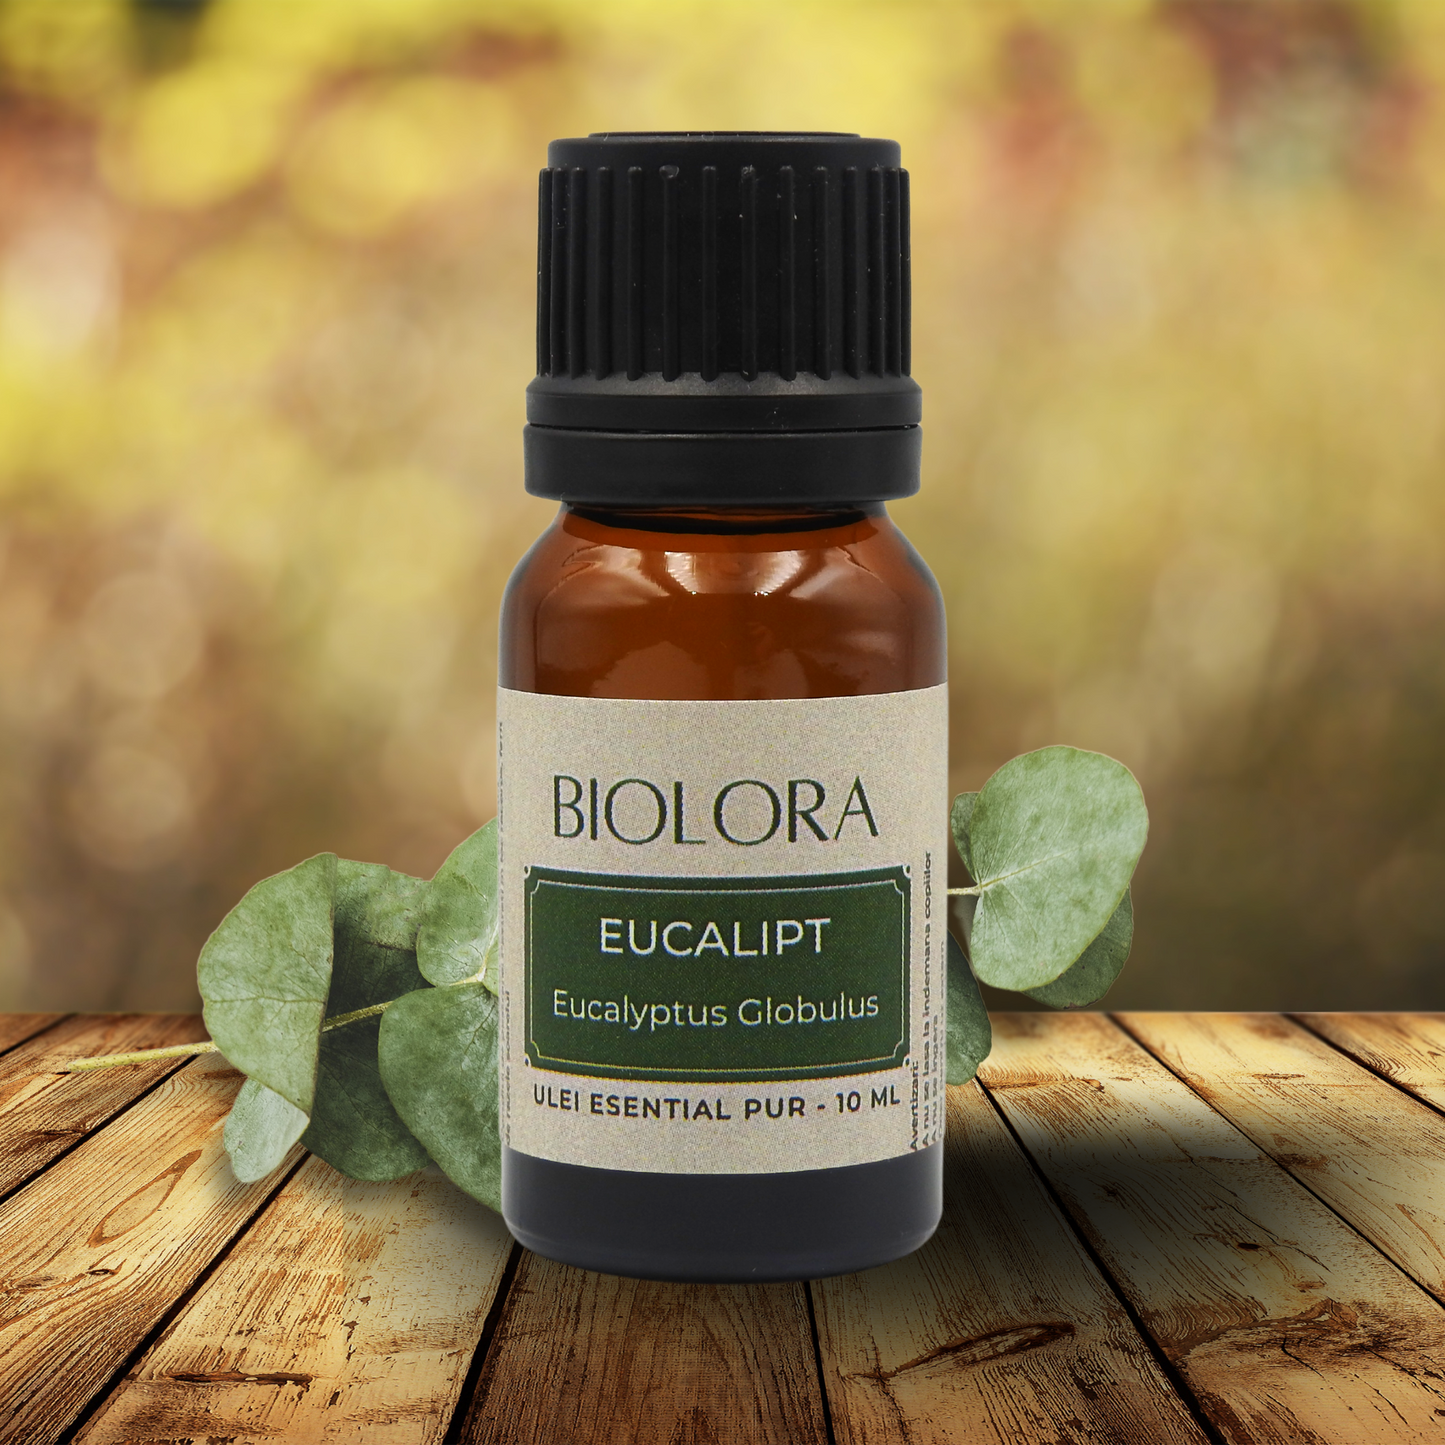 Ulei Esential de Eucalipt Biolora, aromaterapie, puritate 100%, nediluat, 10 ml